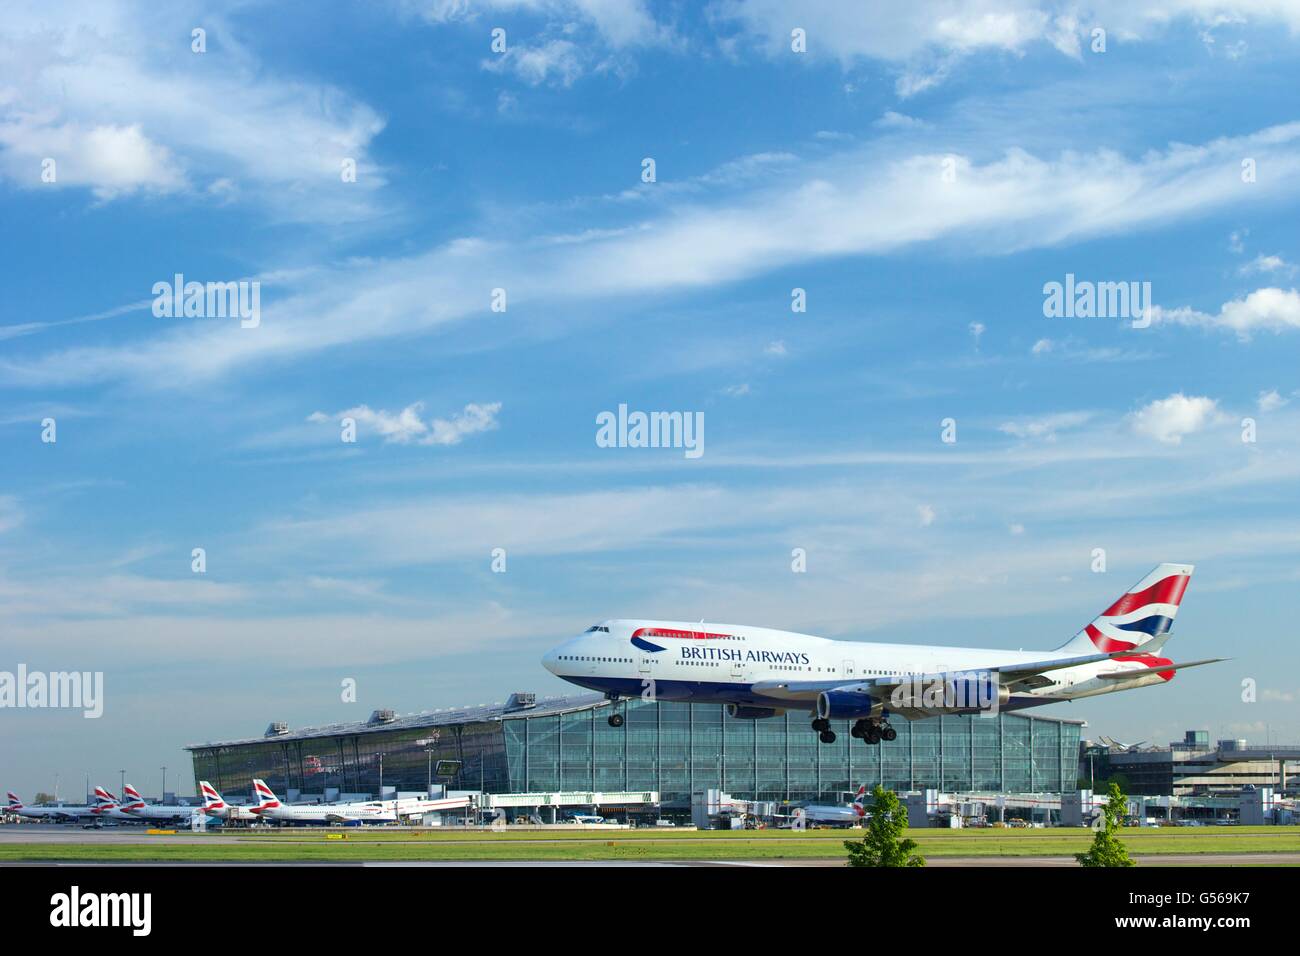 British Airways vuelo aterrizaba en el aeropuerto de Heathrow con el terminal 5 detrás, Londres, Inglaterra, Reino Unido, GB Foto de stock